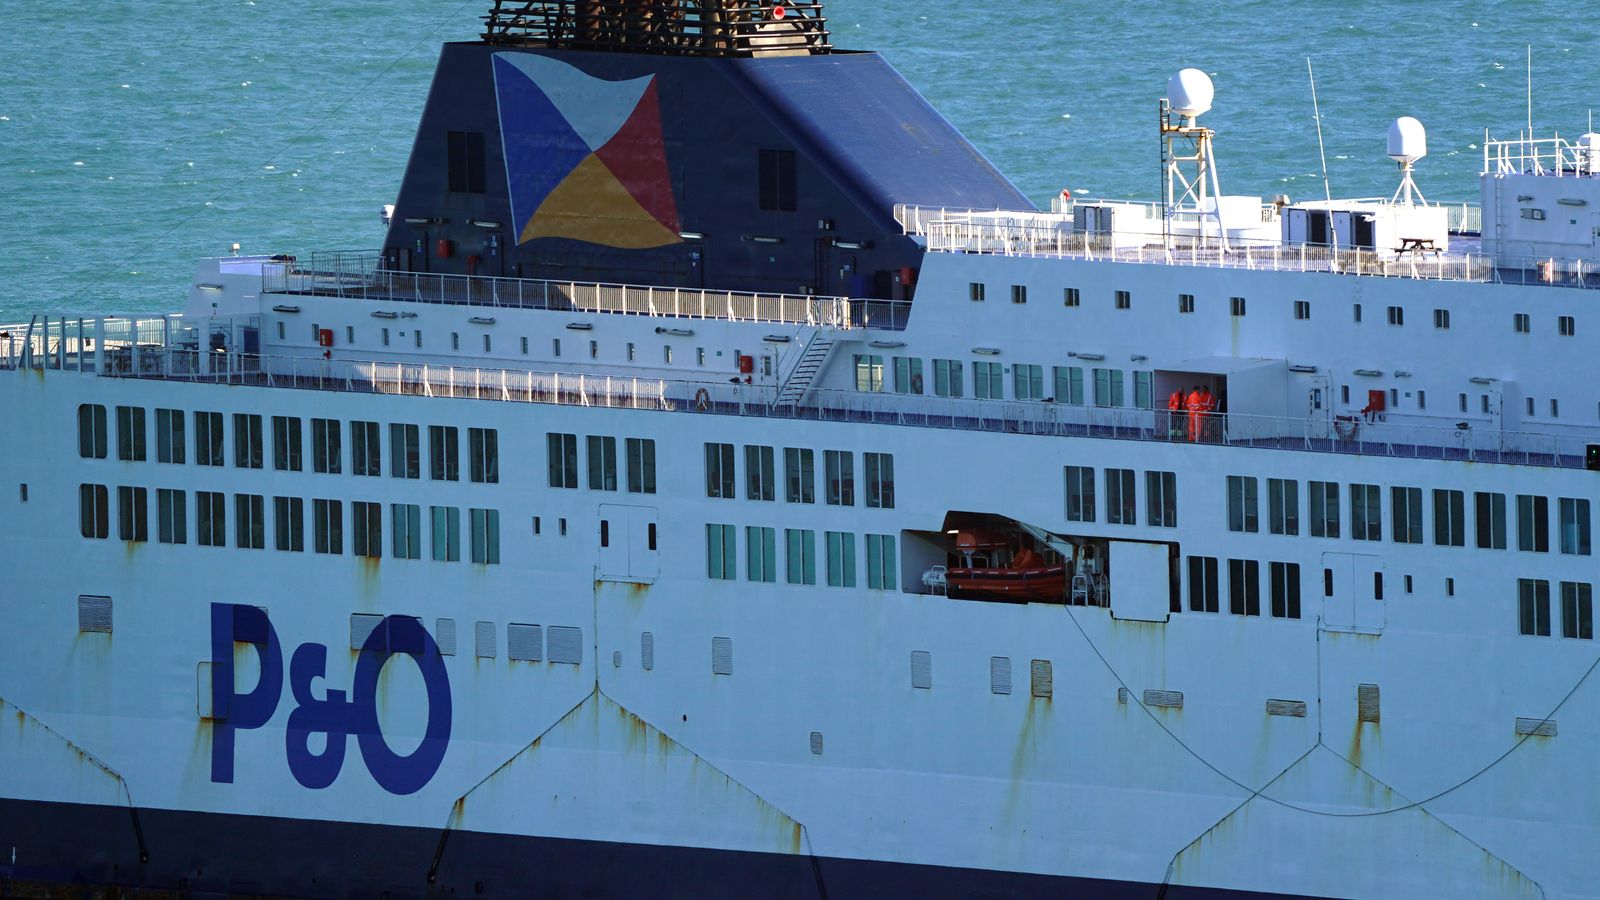 Un autre ferry P&O ‘Pride of Kent’ détenu après avoir échoué à l’inspection |  Actualité économique